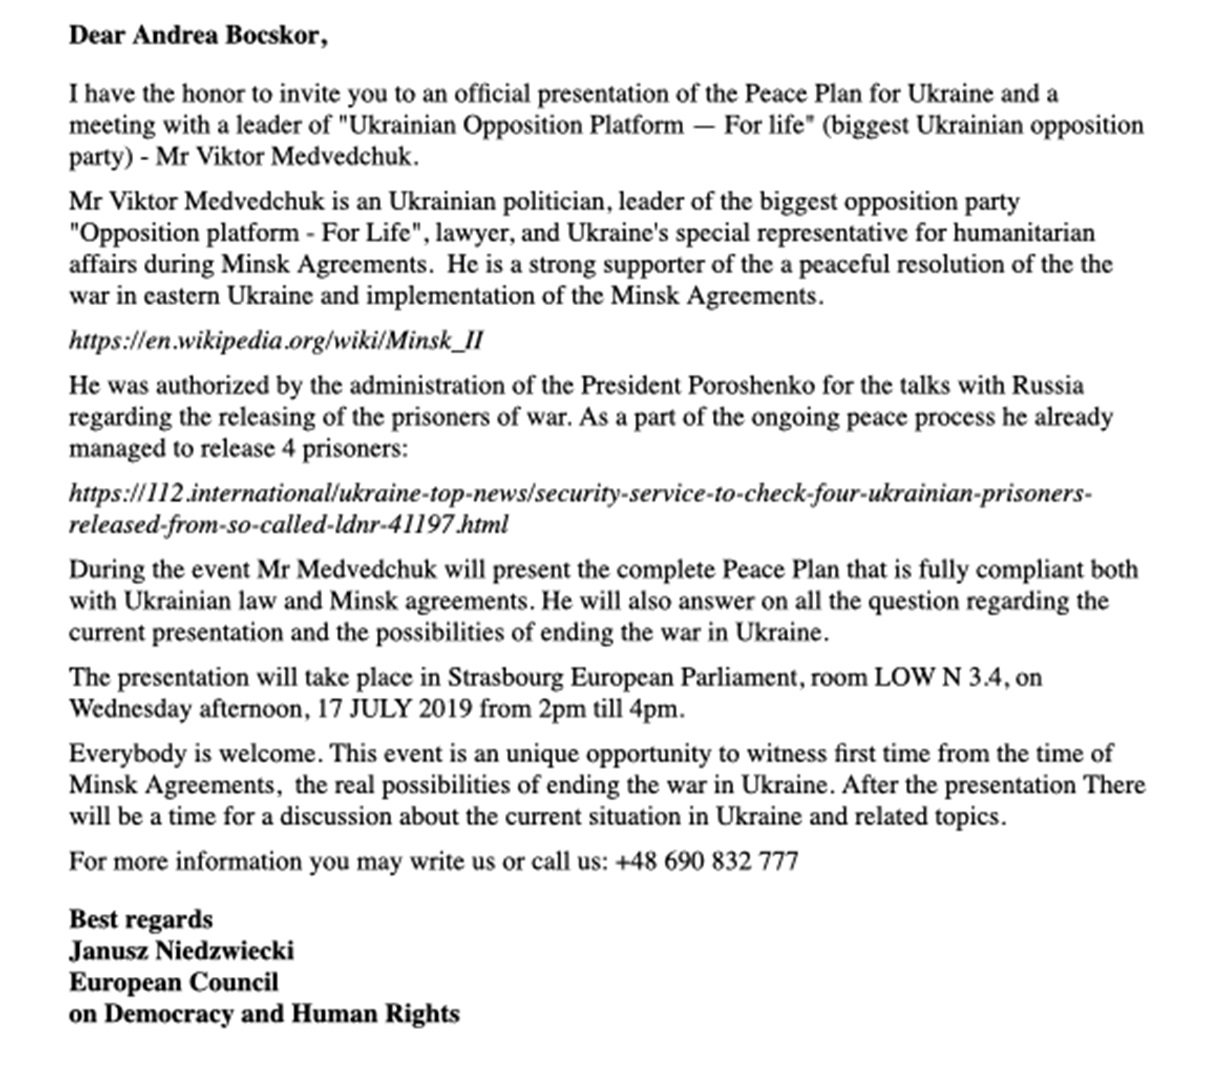 Подібні запрошення отримували й інші депутати Європейського Парламенту, лояльні проросійським «мирним ініціативам» в Україні